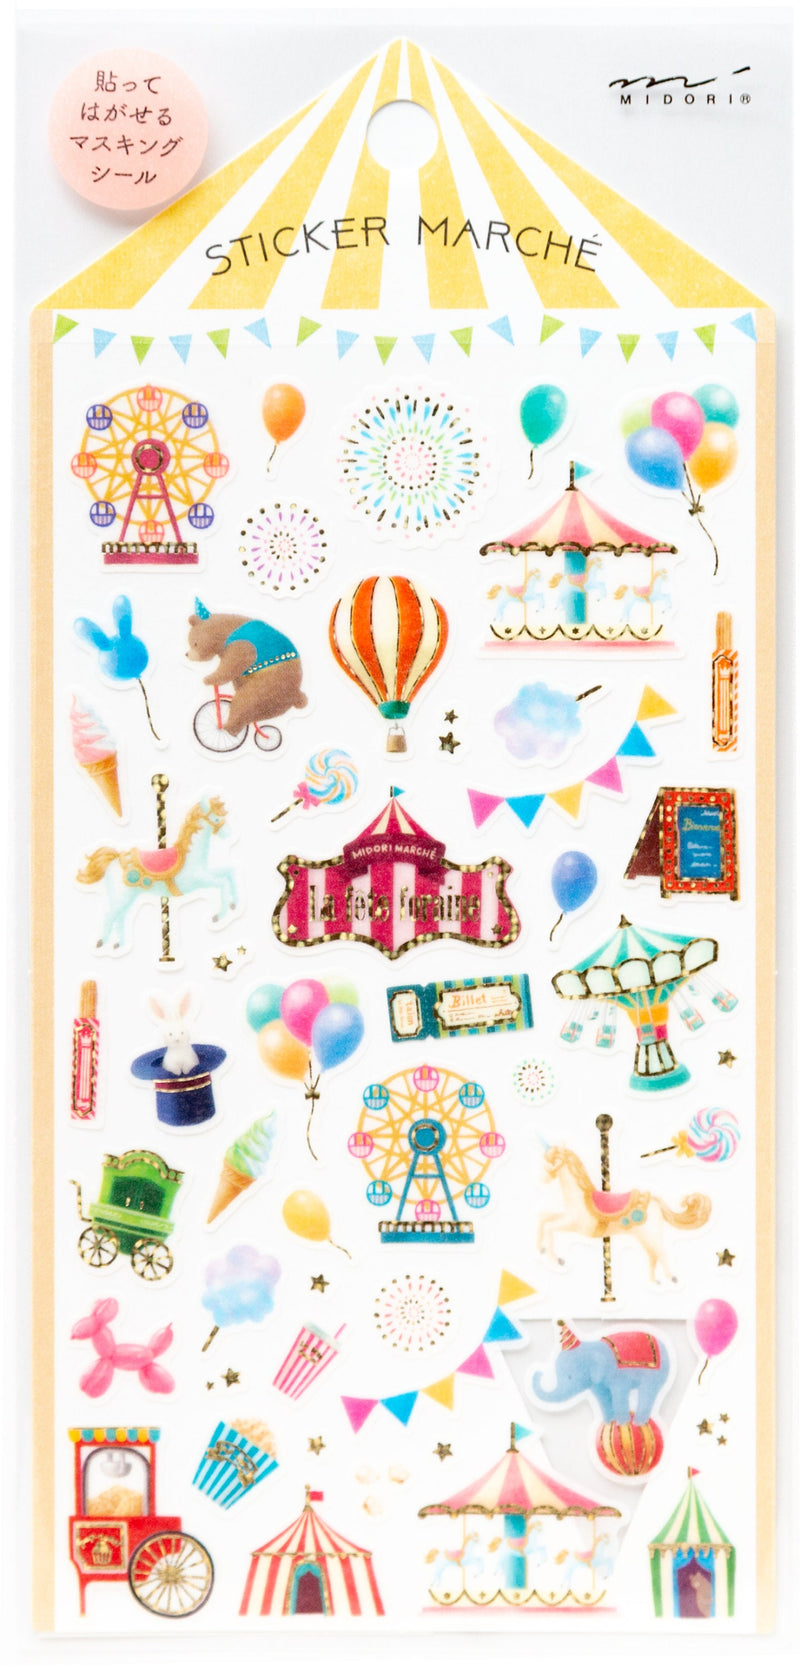 Sticker Marche "Amusement park"